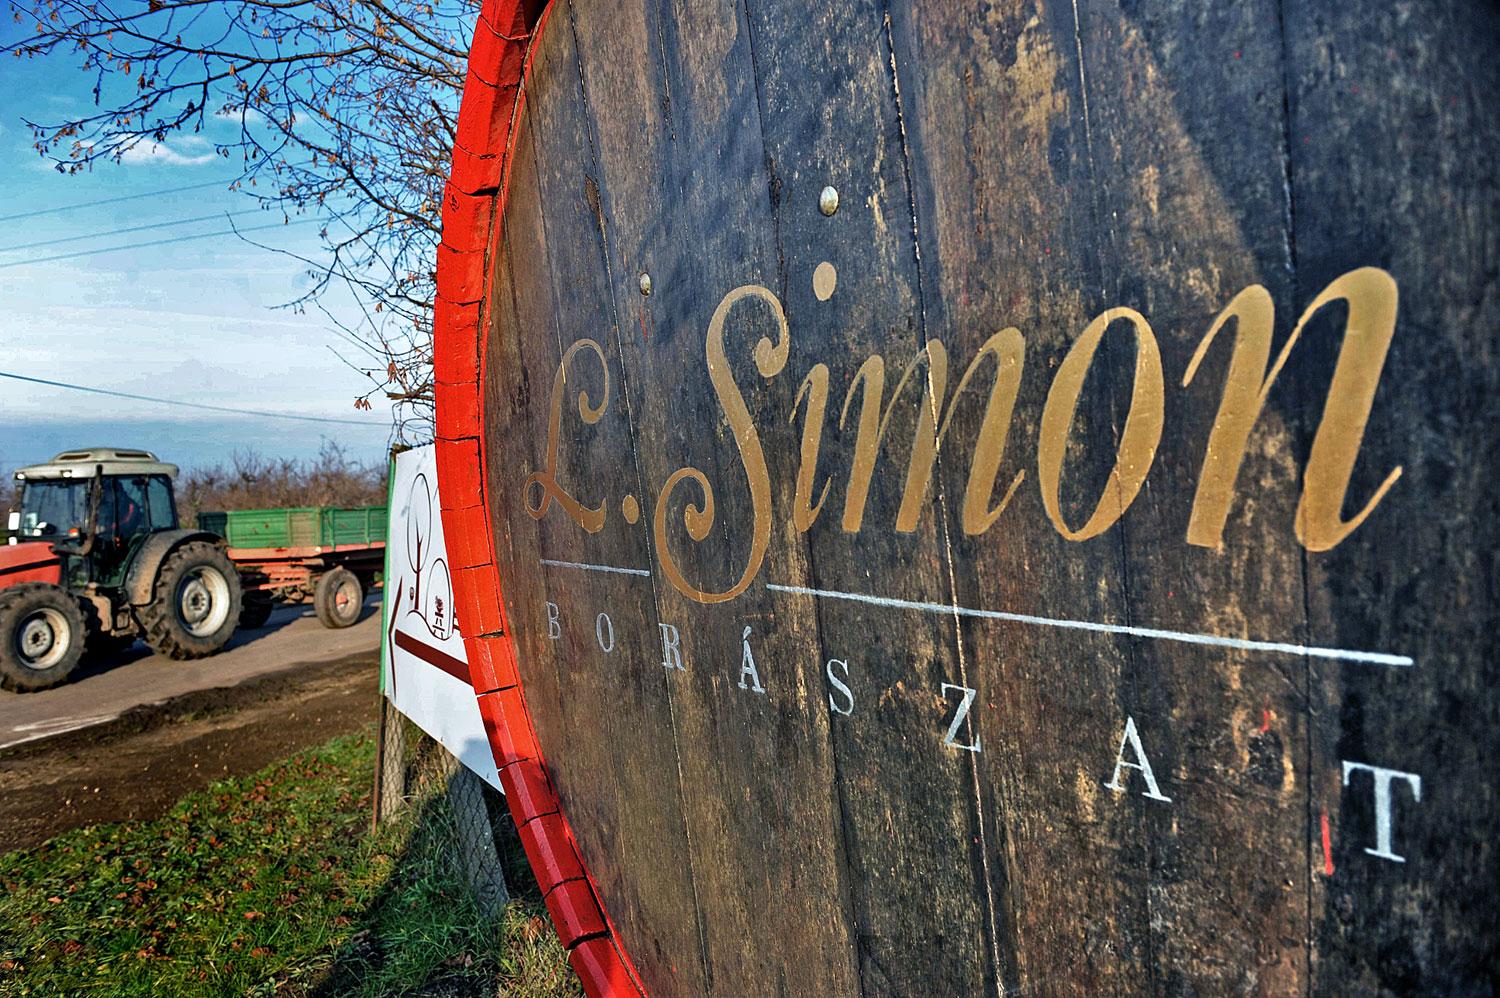 L. Simonék vállalkoznak: a borászat mellé további földeket szereznének